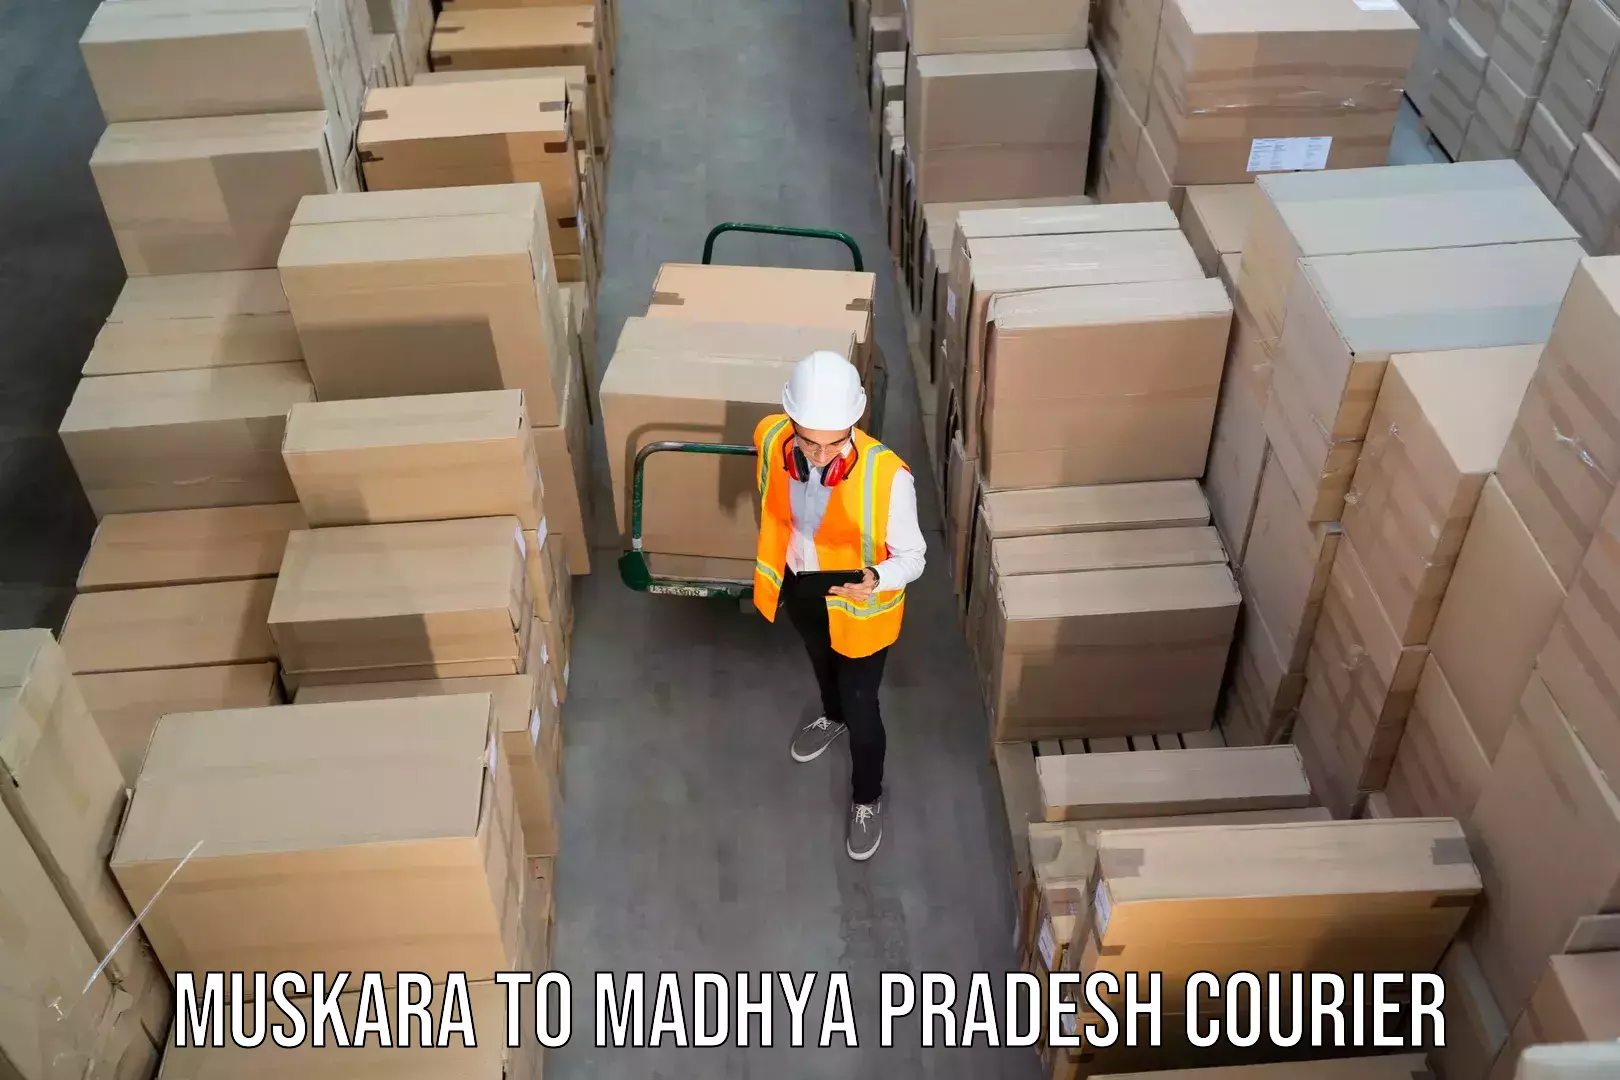 24/7 shipping services Muskara to Madhya Pradesh